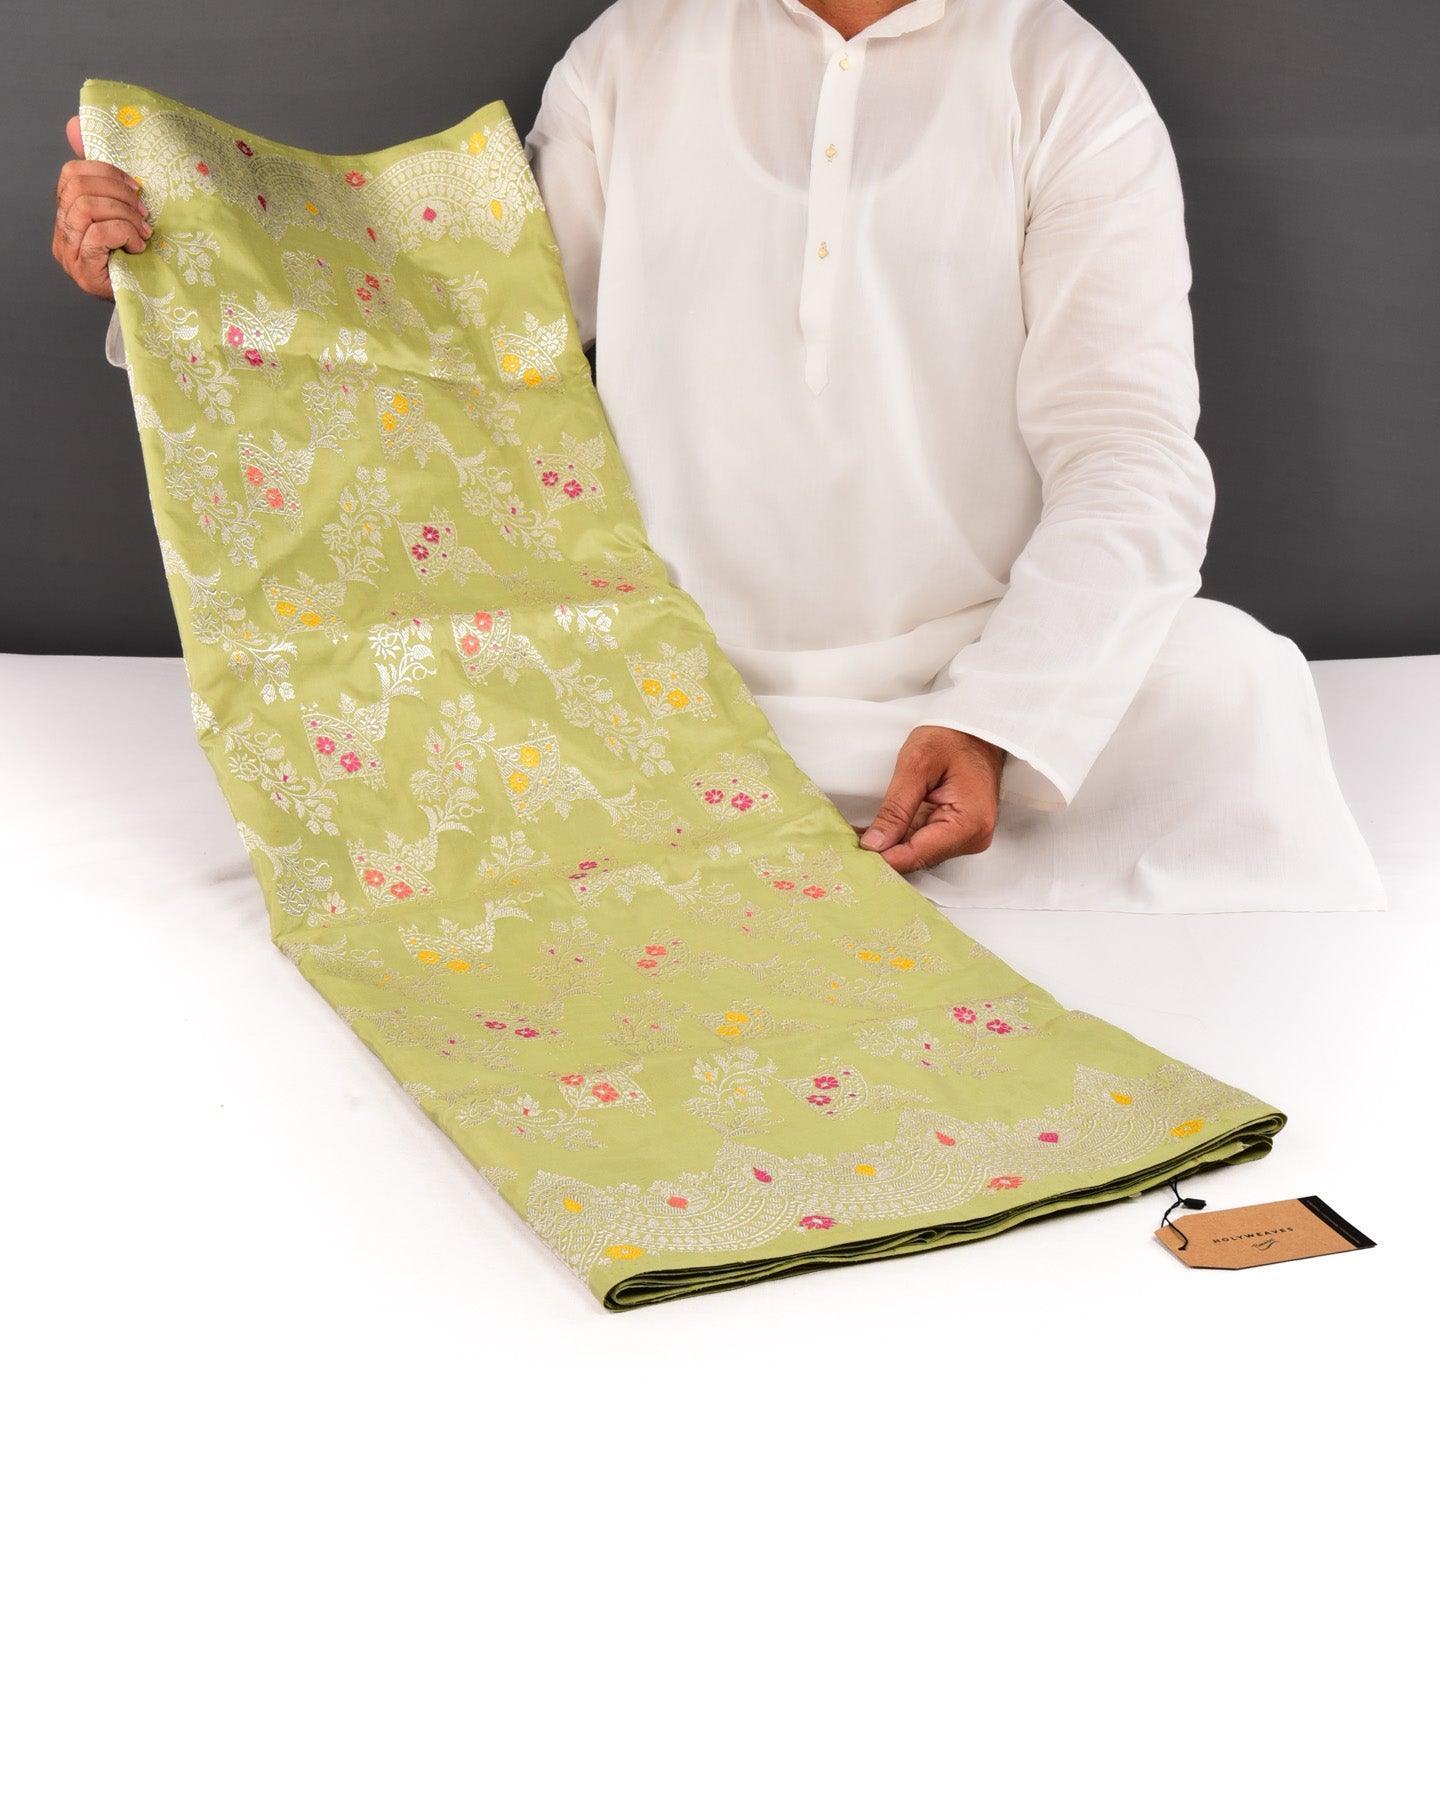 Green Banarasi Silver Zari Jangla Kadhuan Brocade Handwoven Katan Silk Saree with Meenakari Work - By HolyWeaves, Benares